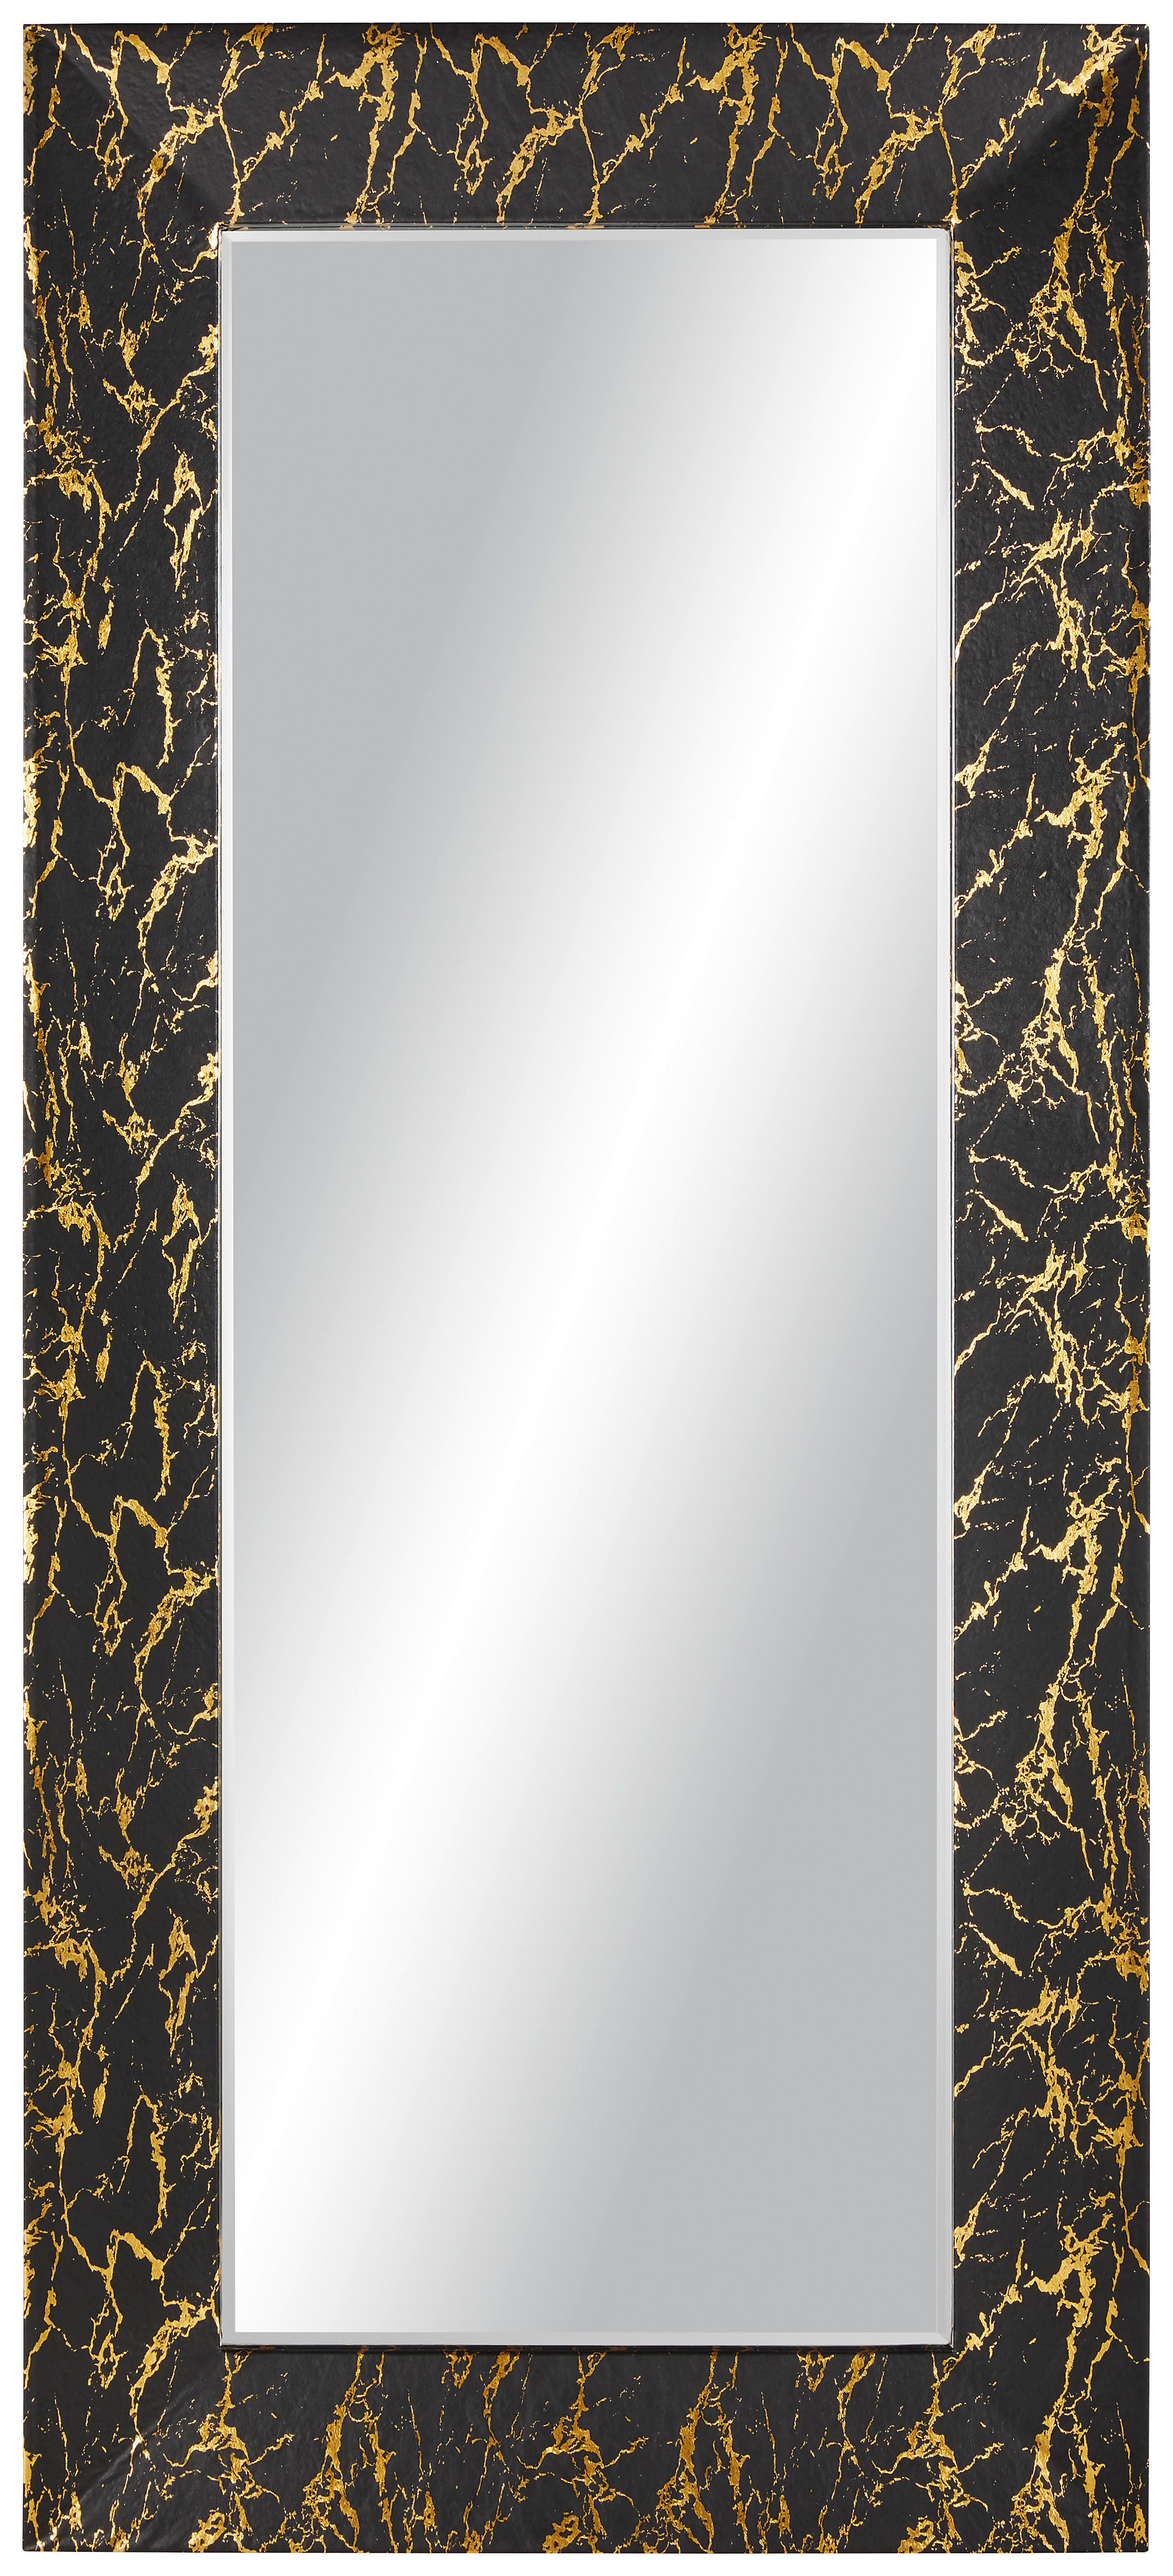 Stensko Ogledalo Glamour, 80 X 180 Cm - zlate barve/črna, Moderno, steklo/leseni material (80/180/5cm) - Modern Living